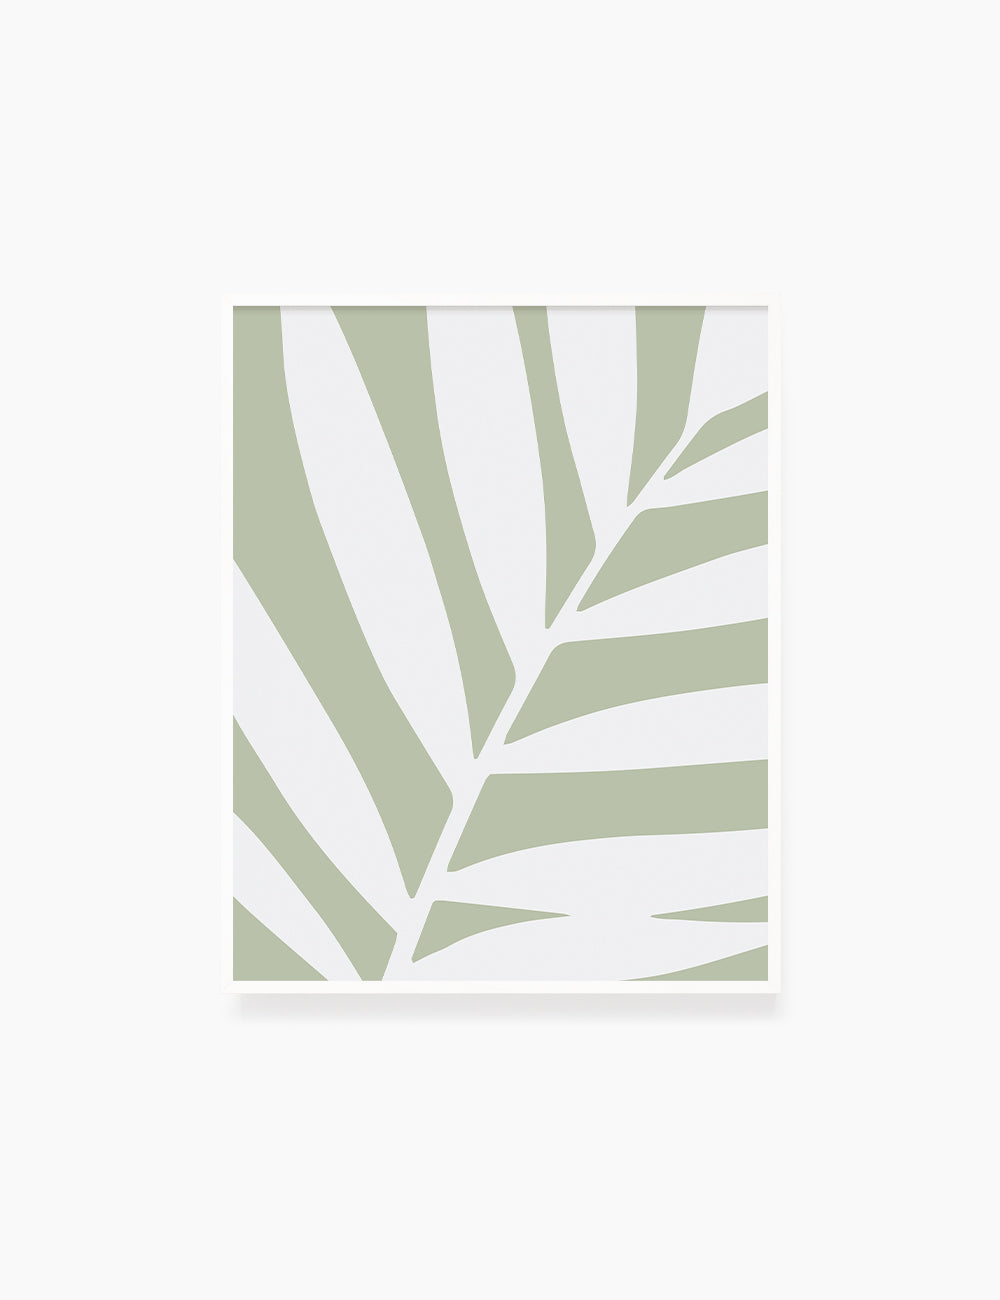 Palm Leaf Print Minimalist Green Sage Green Aesthetic Print Wall Art  Digital Download 